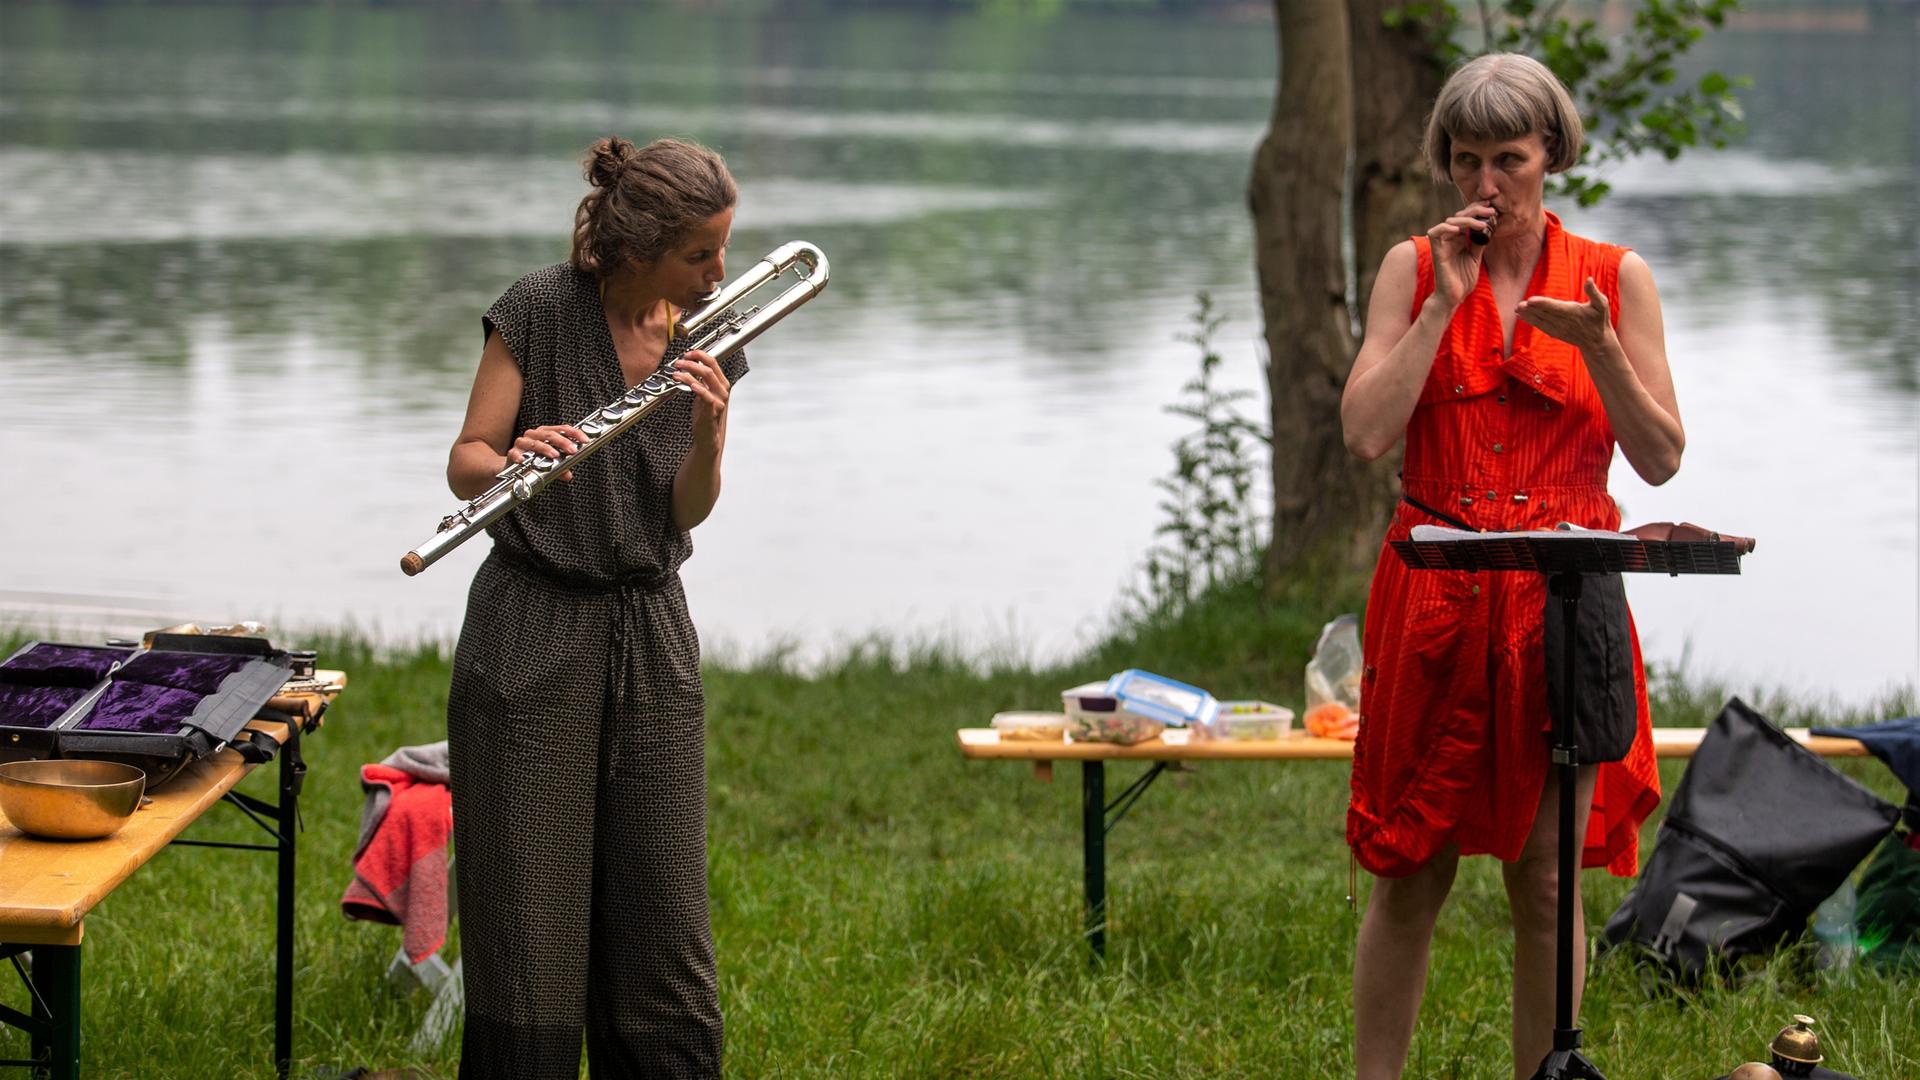 Sabine Vogel und Ute Wassermann stehen inmitten verschiedener Utensilien auf dem Rasen vor dem See und geben ein Konzert